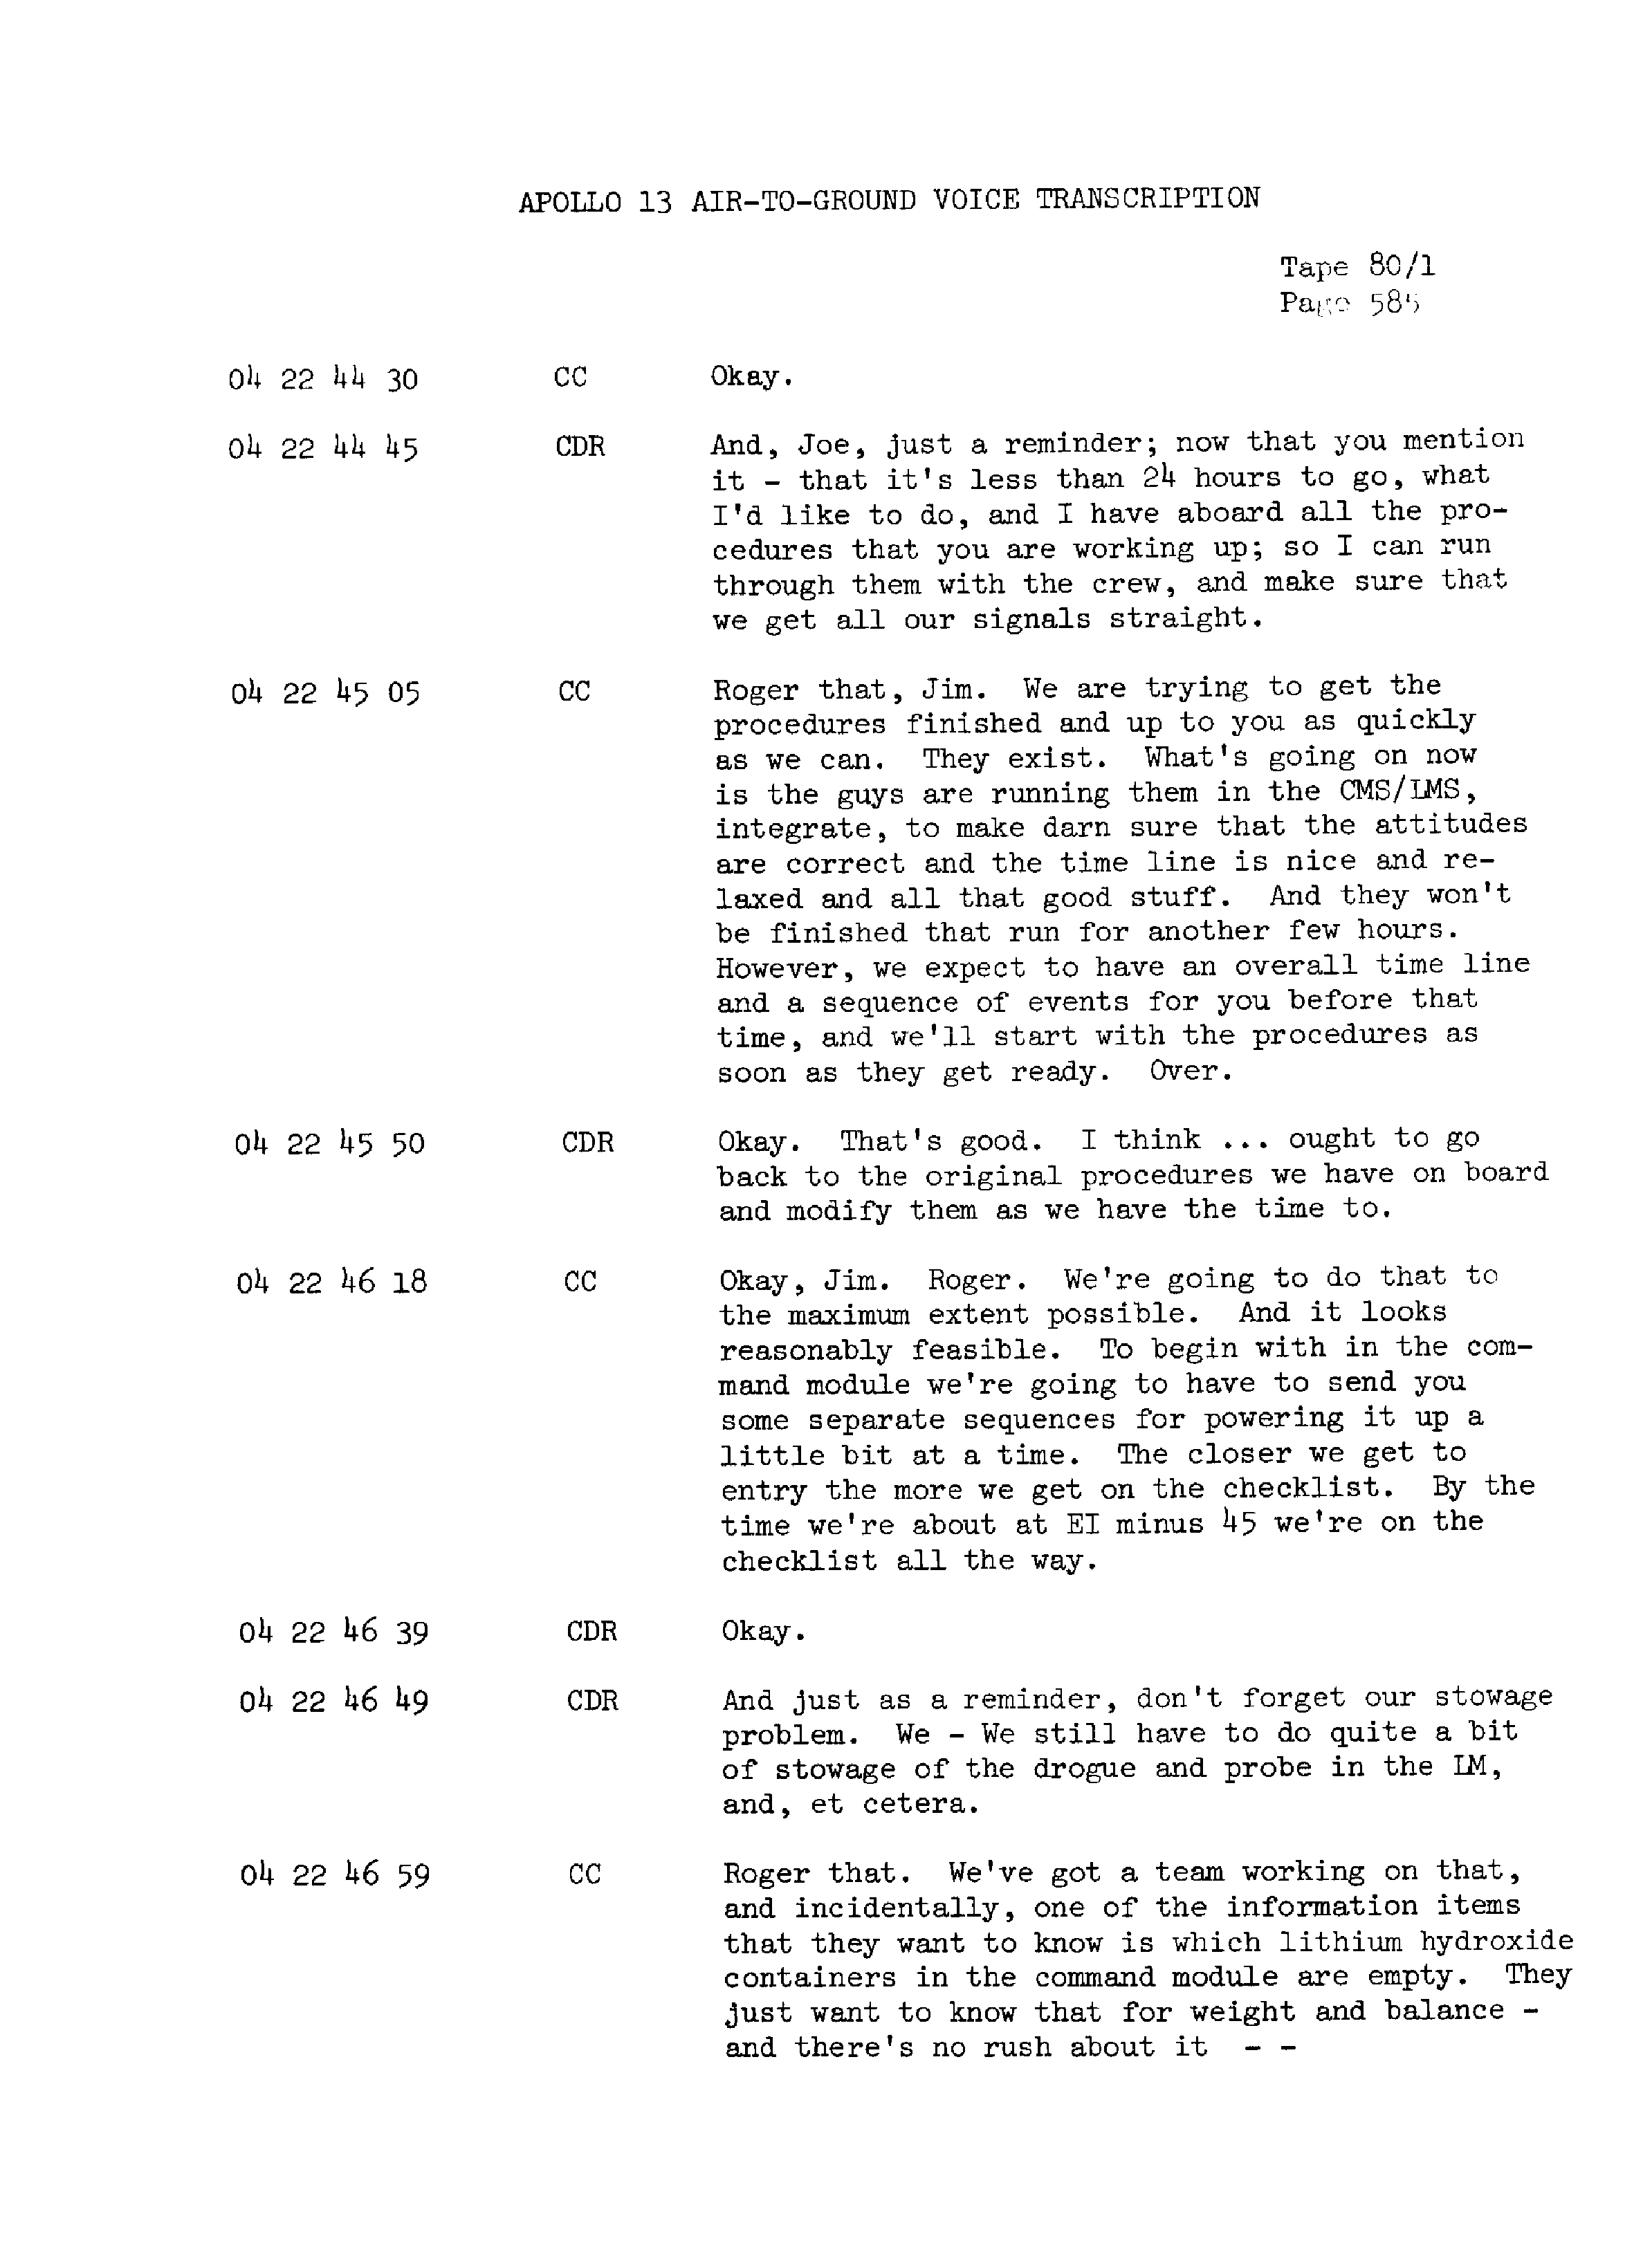 Page 592 of Apollo 13’s original transcript